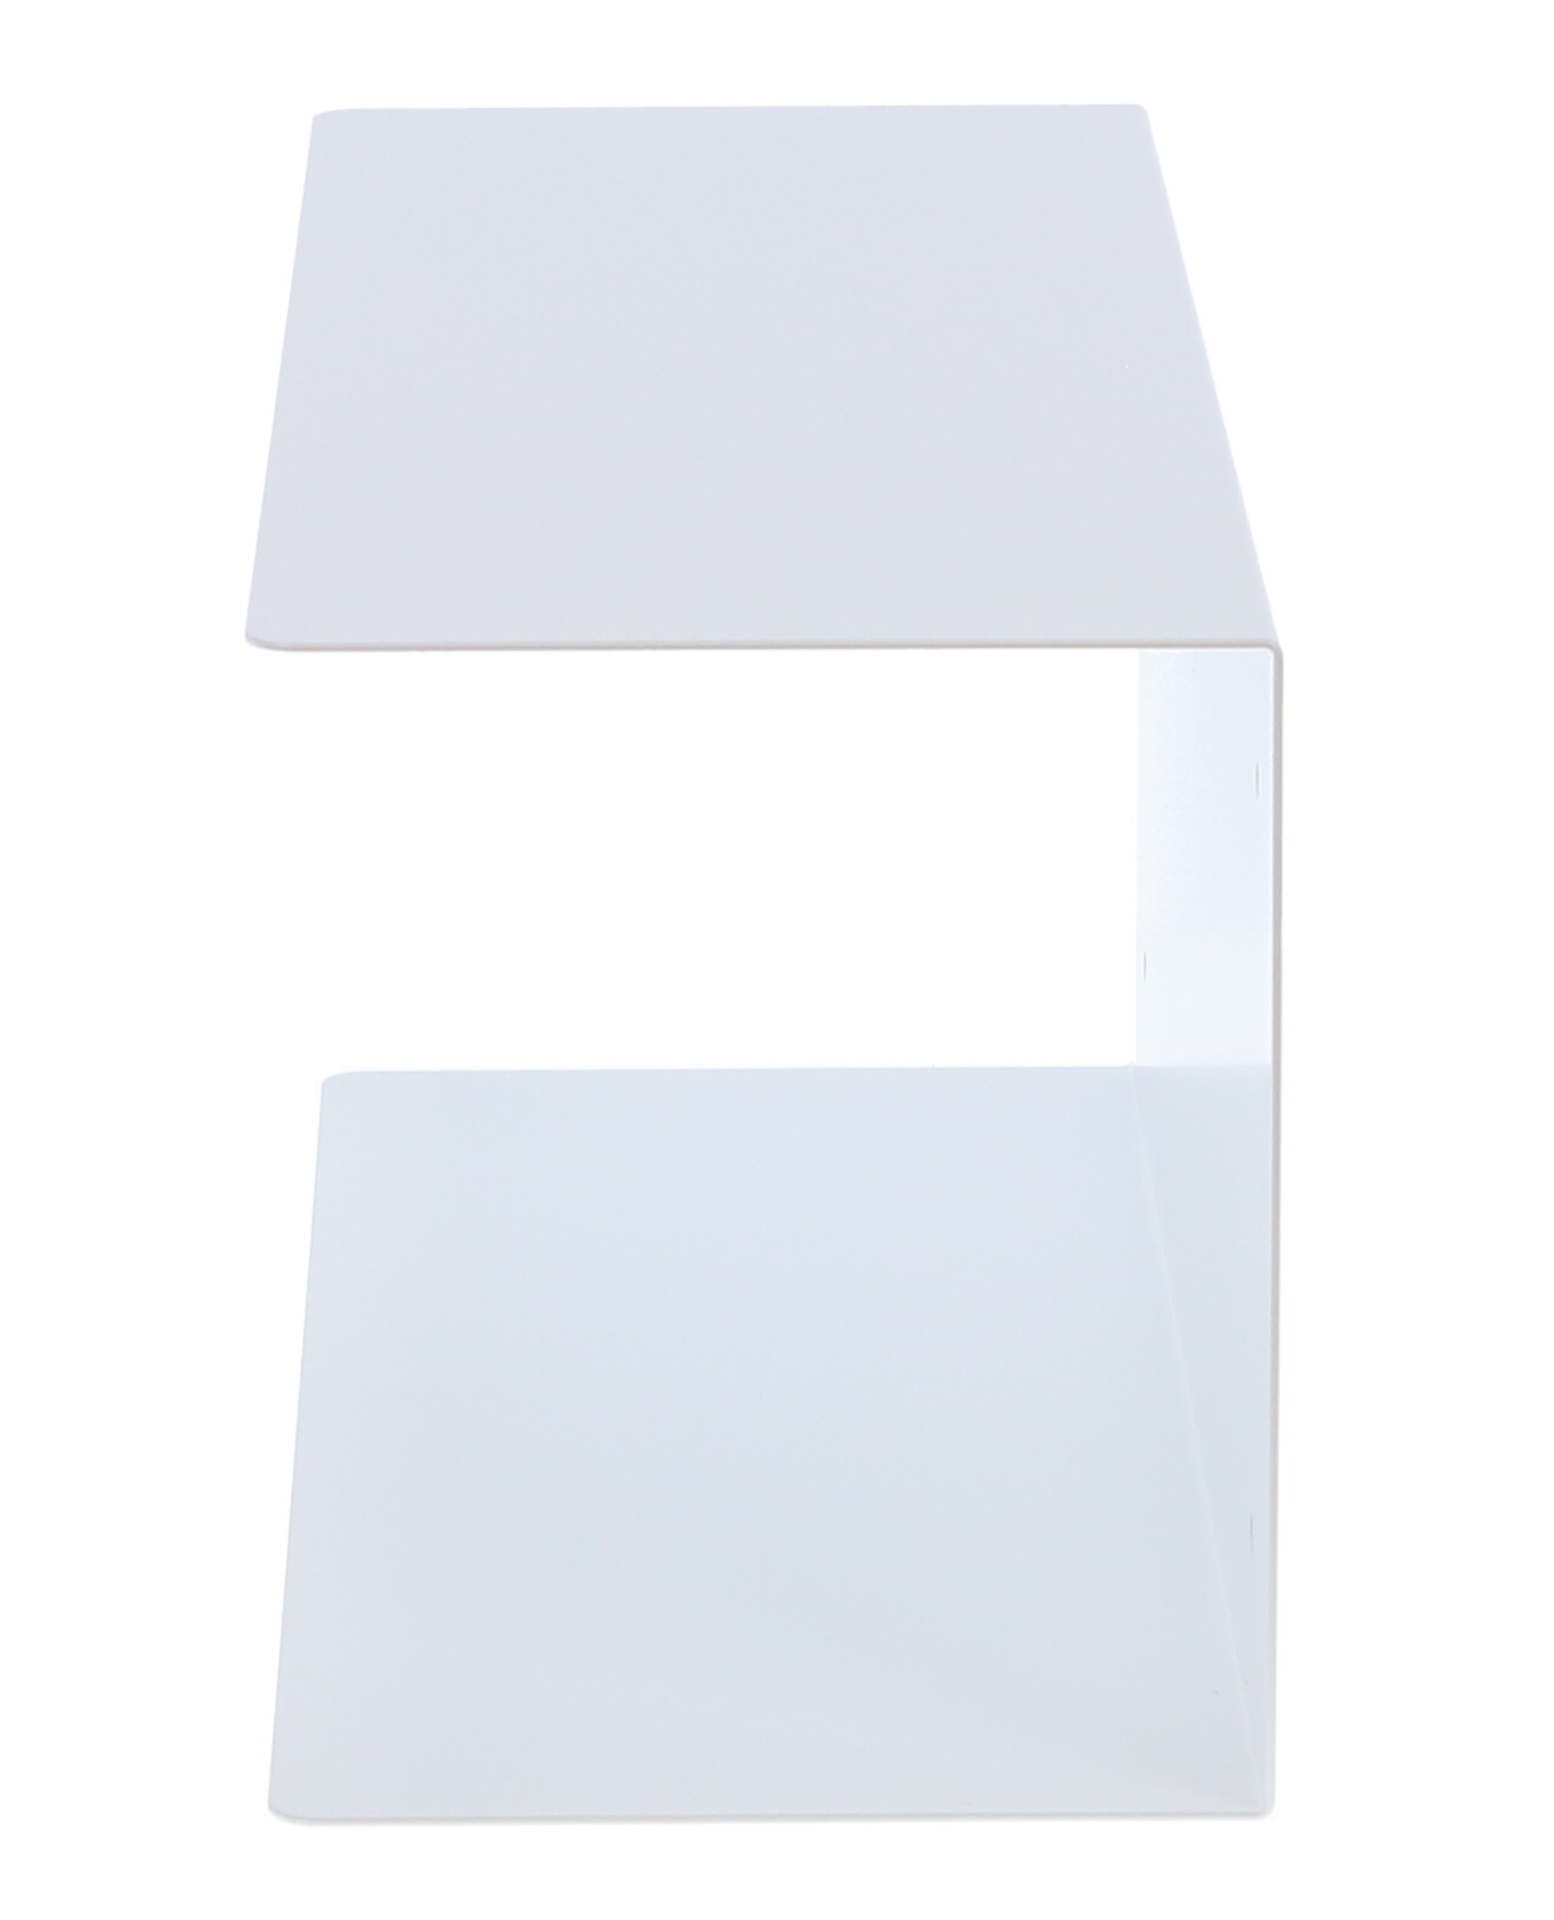 Das Wandregal Fleur wurde aus Metall gefertigt und hat einen weißen Farbton. Die Breite beträgt 50 cm. Das Design ist schlicht aber auch modern. Das Regal ist ein Produkt der Marke Jan Kurtz.